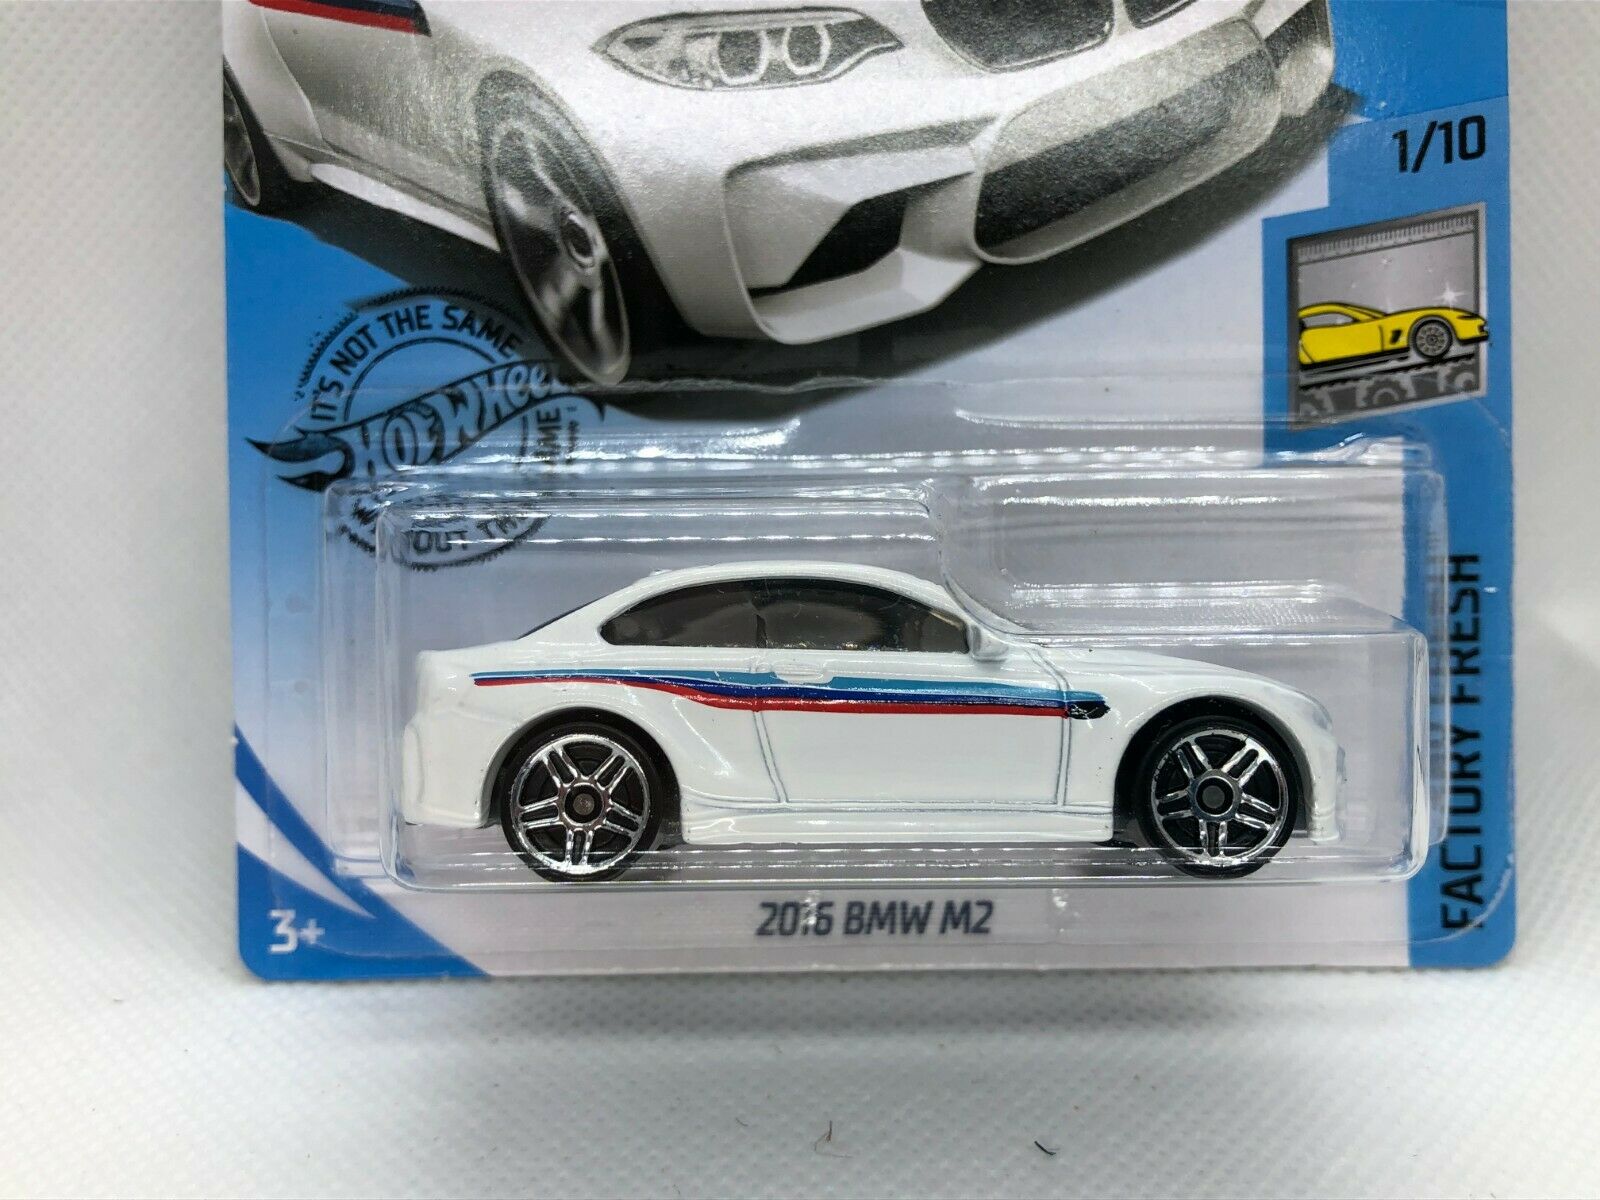 2016 BMW M2 Hot Wheels